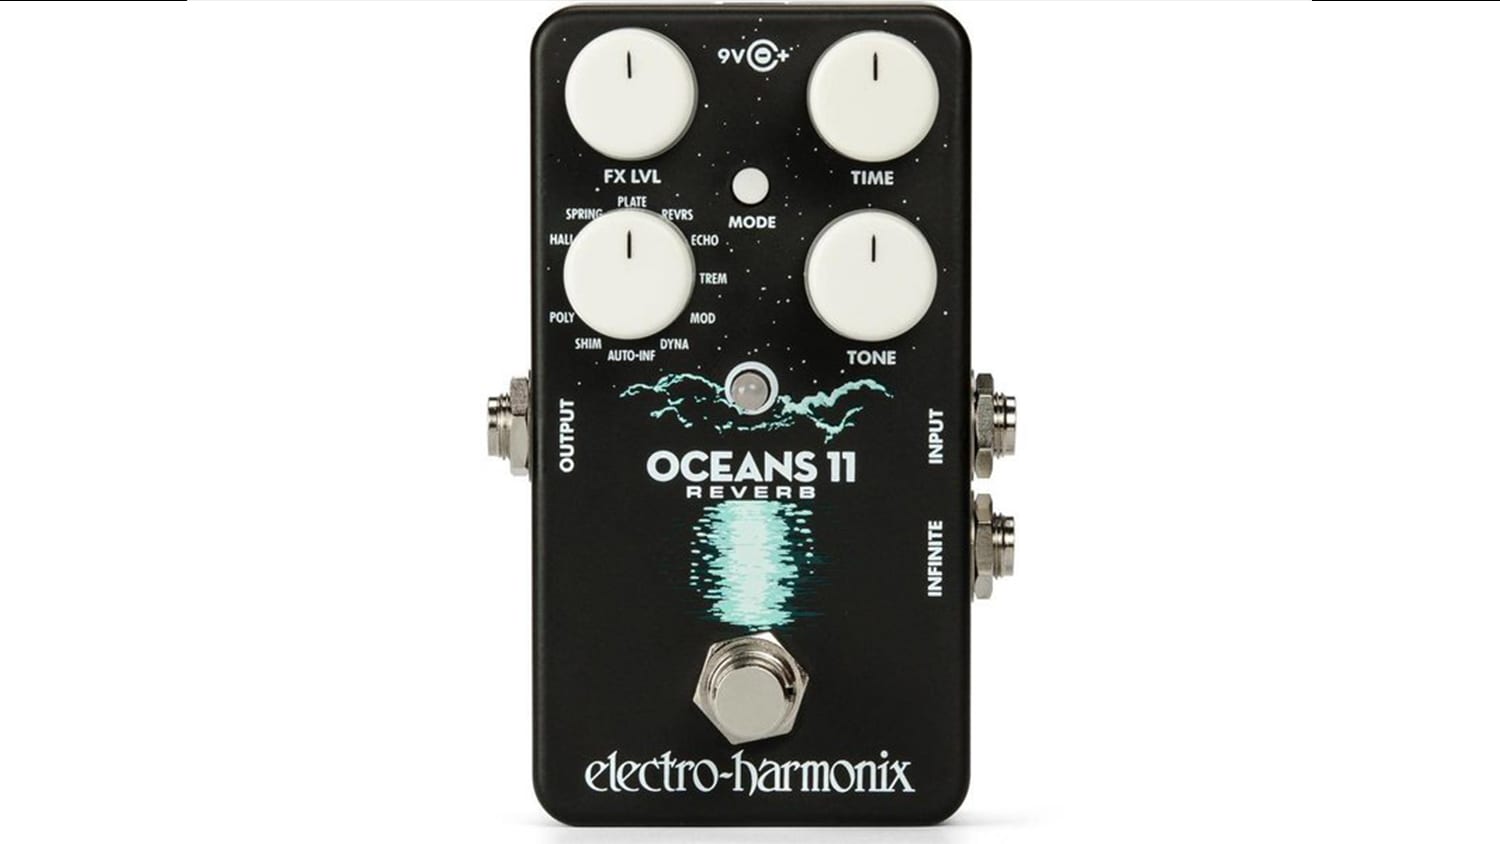 electro-harmonix oceans 11 reverb